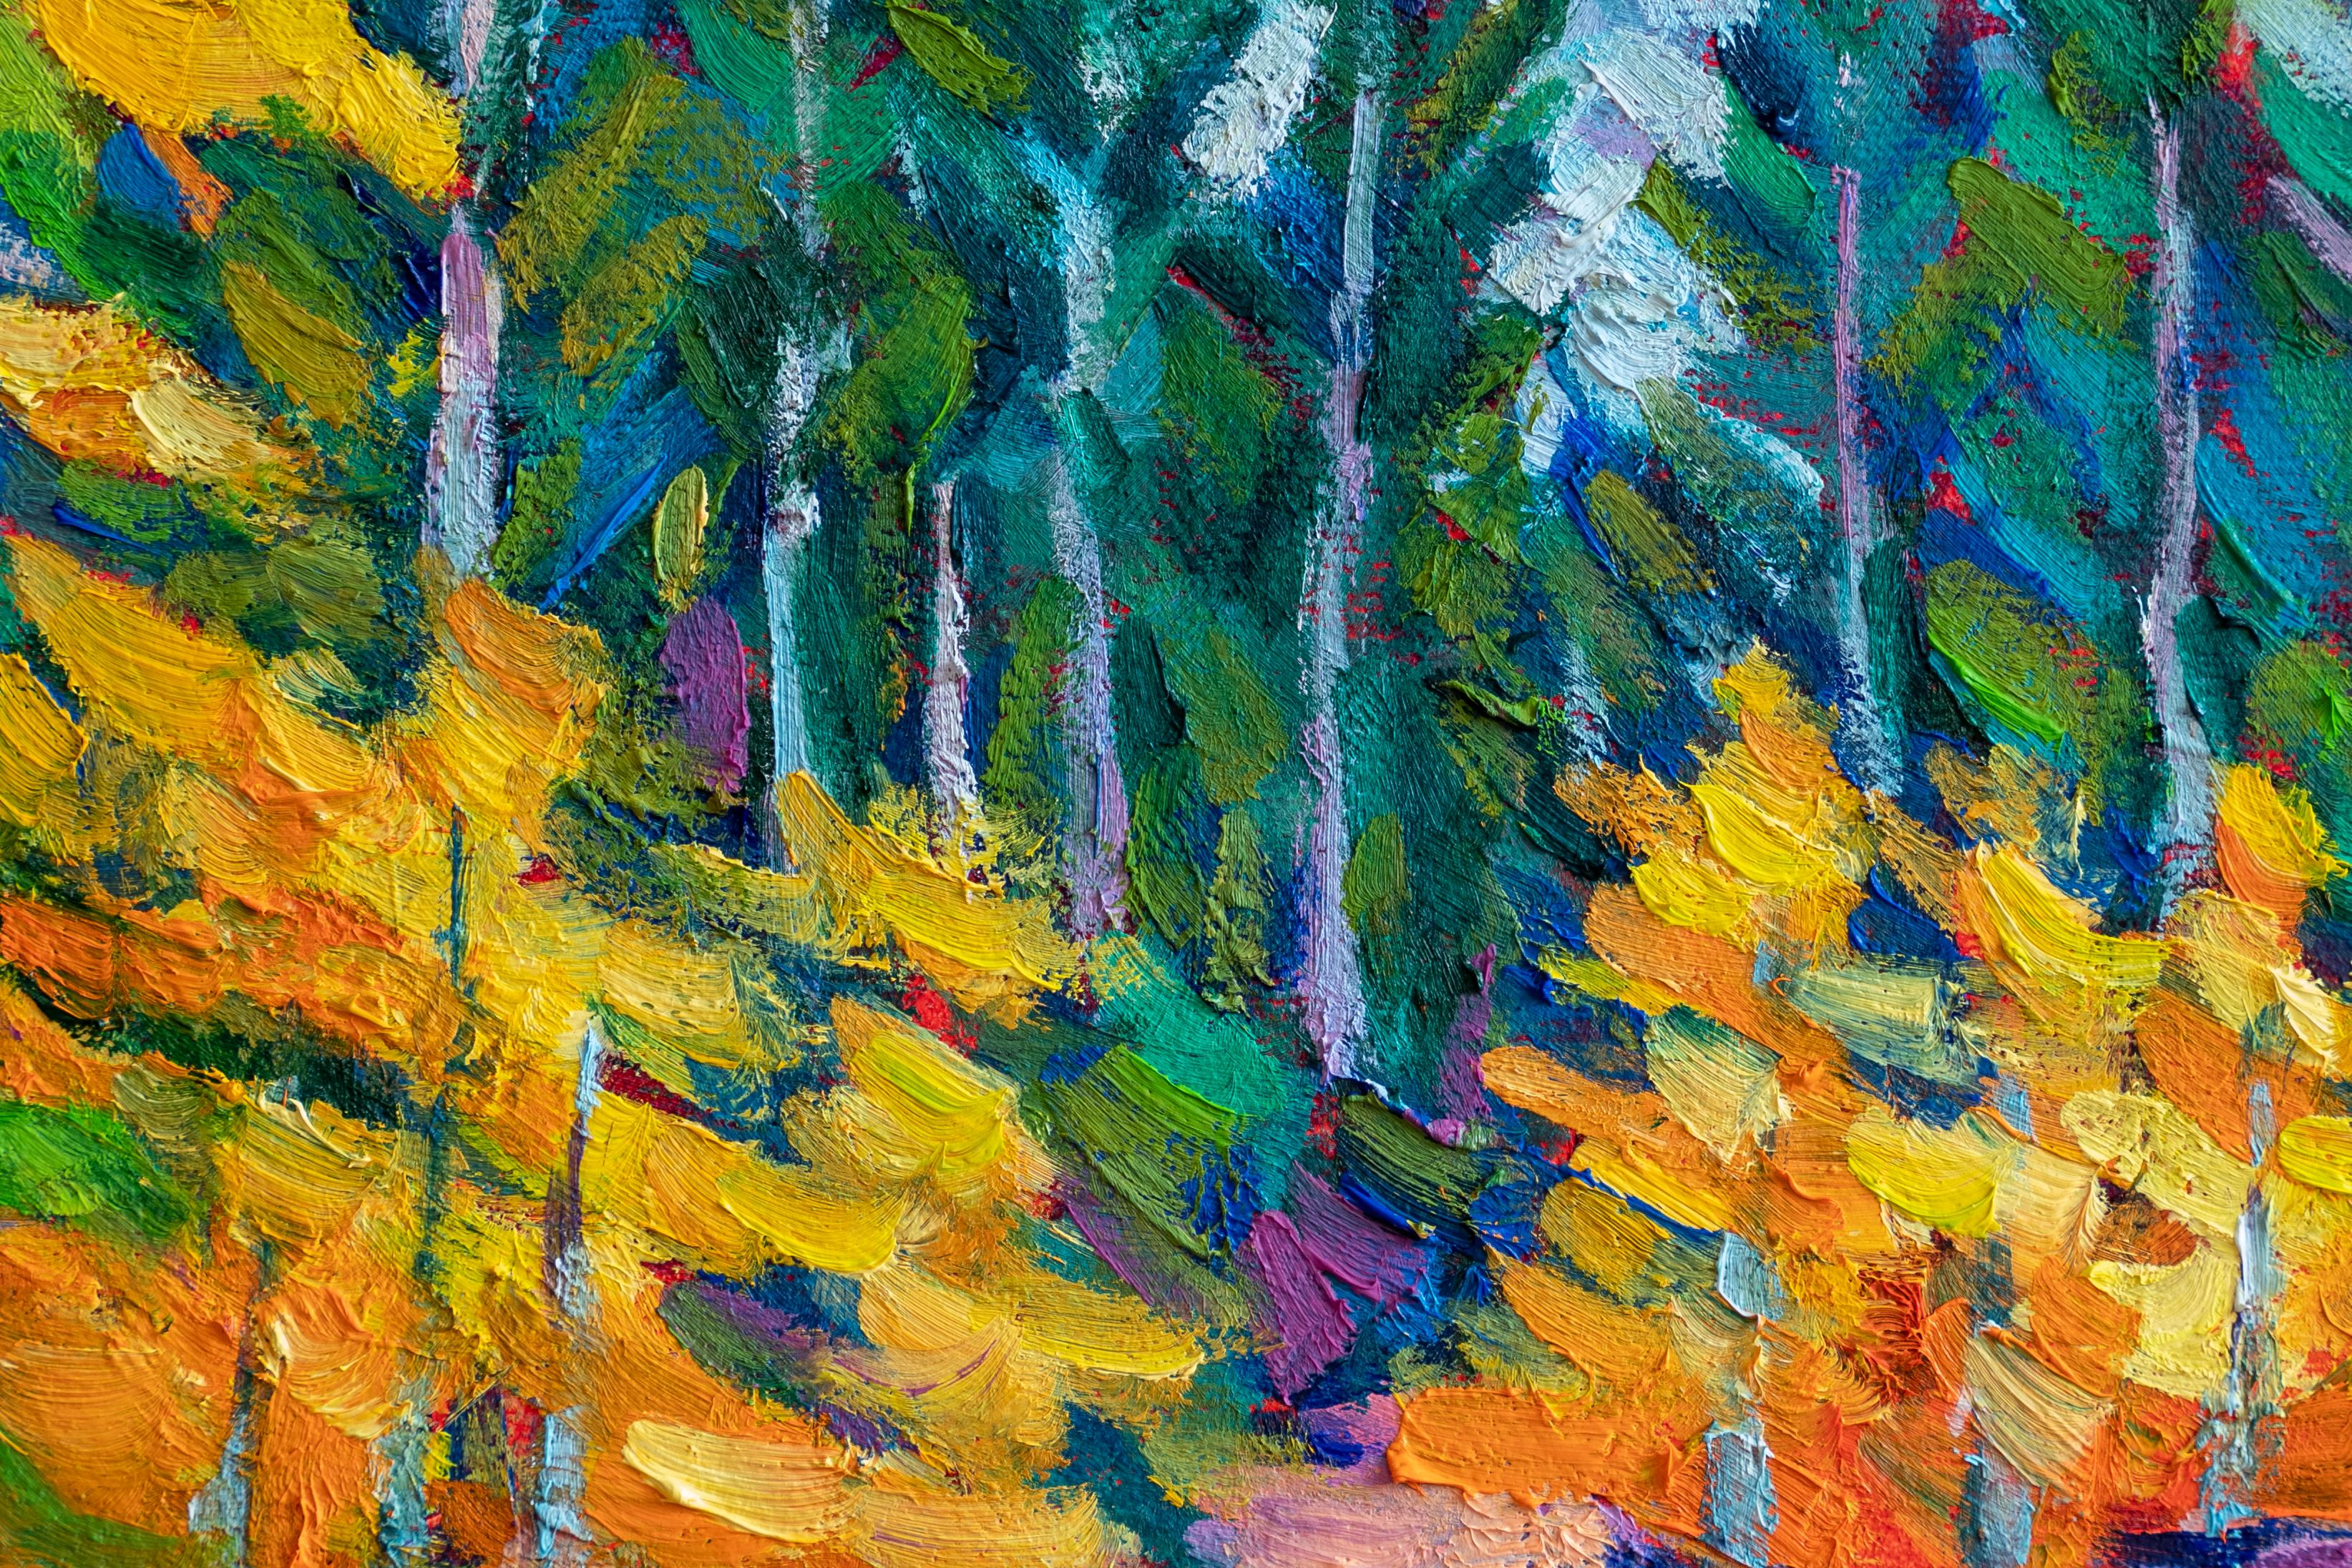 <p>Kommentare des Künstlers<br>Der Künstler Tao Bai malt einen ruhigen Bach, der sich langsam seinen Weg durch Felsen und Geröll bahnt. Die Baumreihen auf beiden Seiten färben sich in goldene Farbtöne und kündigen so den Herbst an. Die Sonne scheint